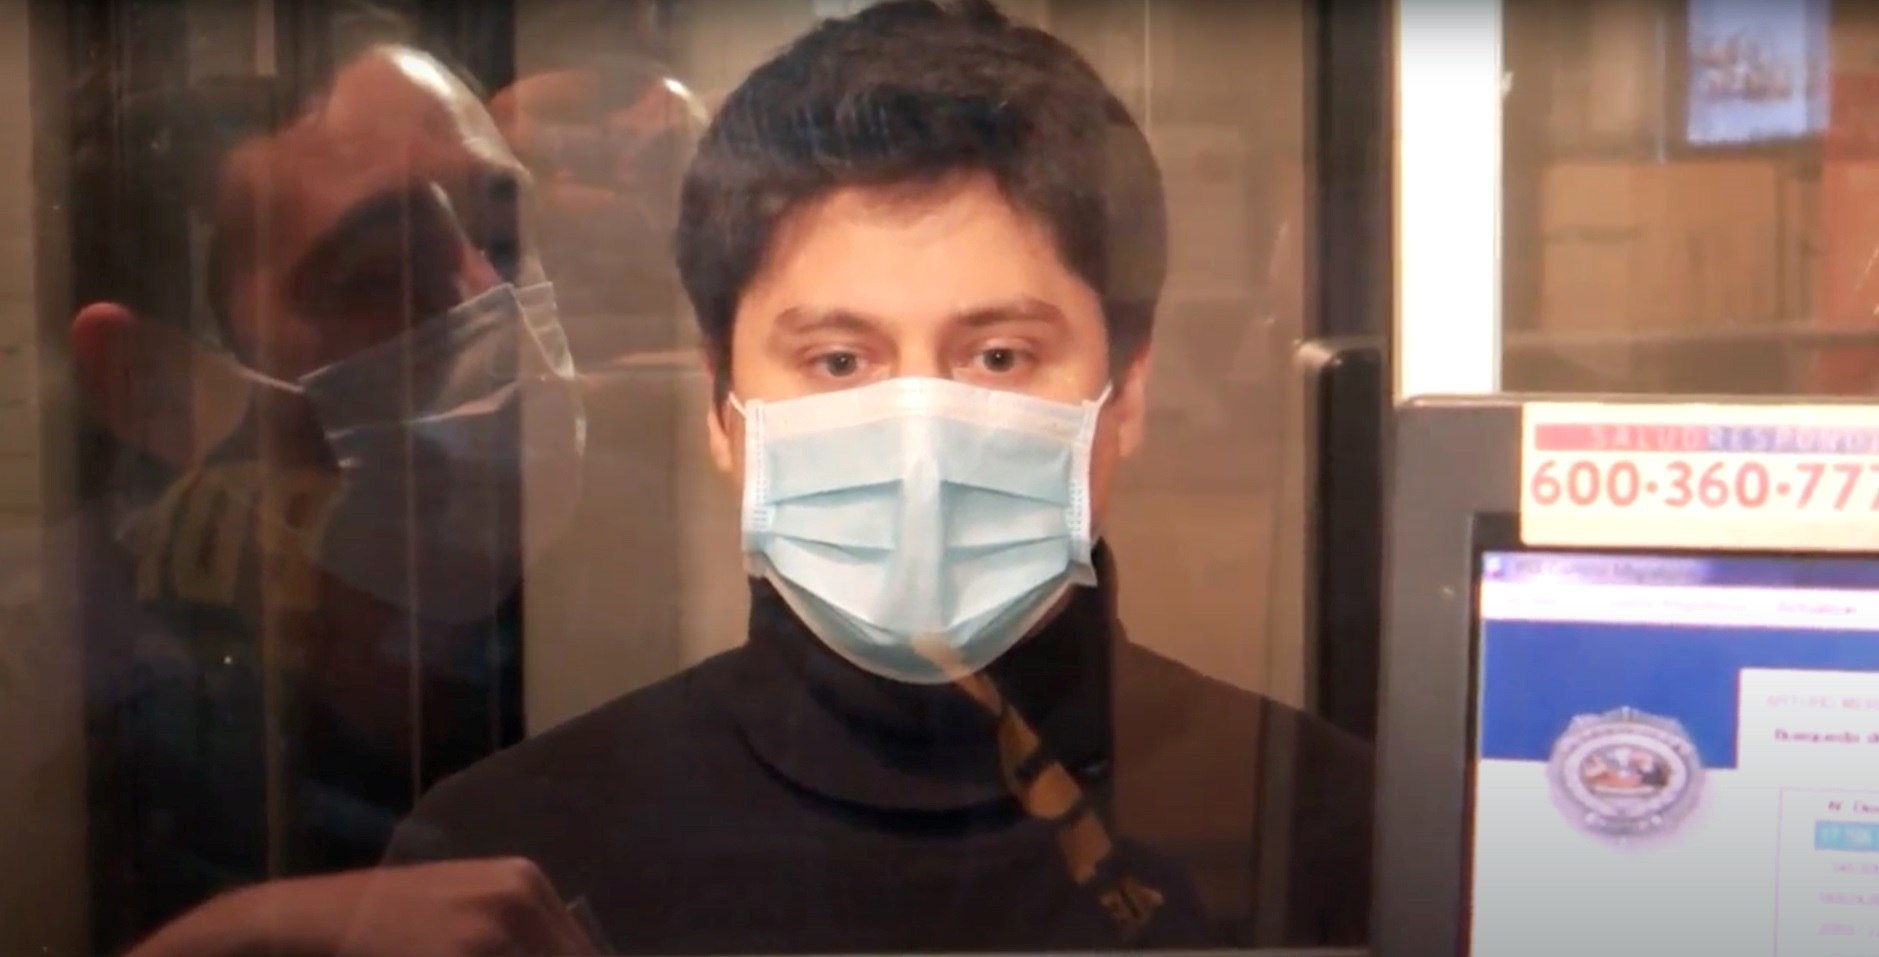 Captura de un video cedido por la Policía de Investigaciones de Chile que muestra al joven chileno Nicolás Zepeda al momento de ser registrado en la oficina de Inmigración para su proceso de extradición a Francia (EFE/Archivo)
